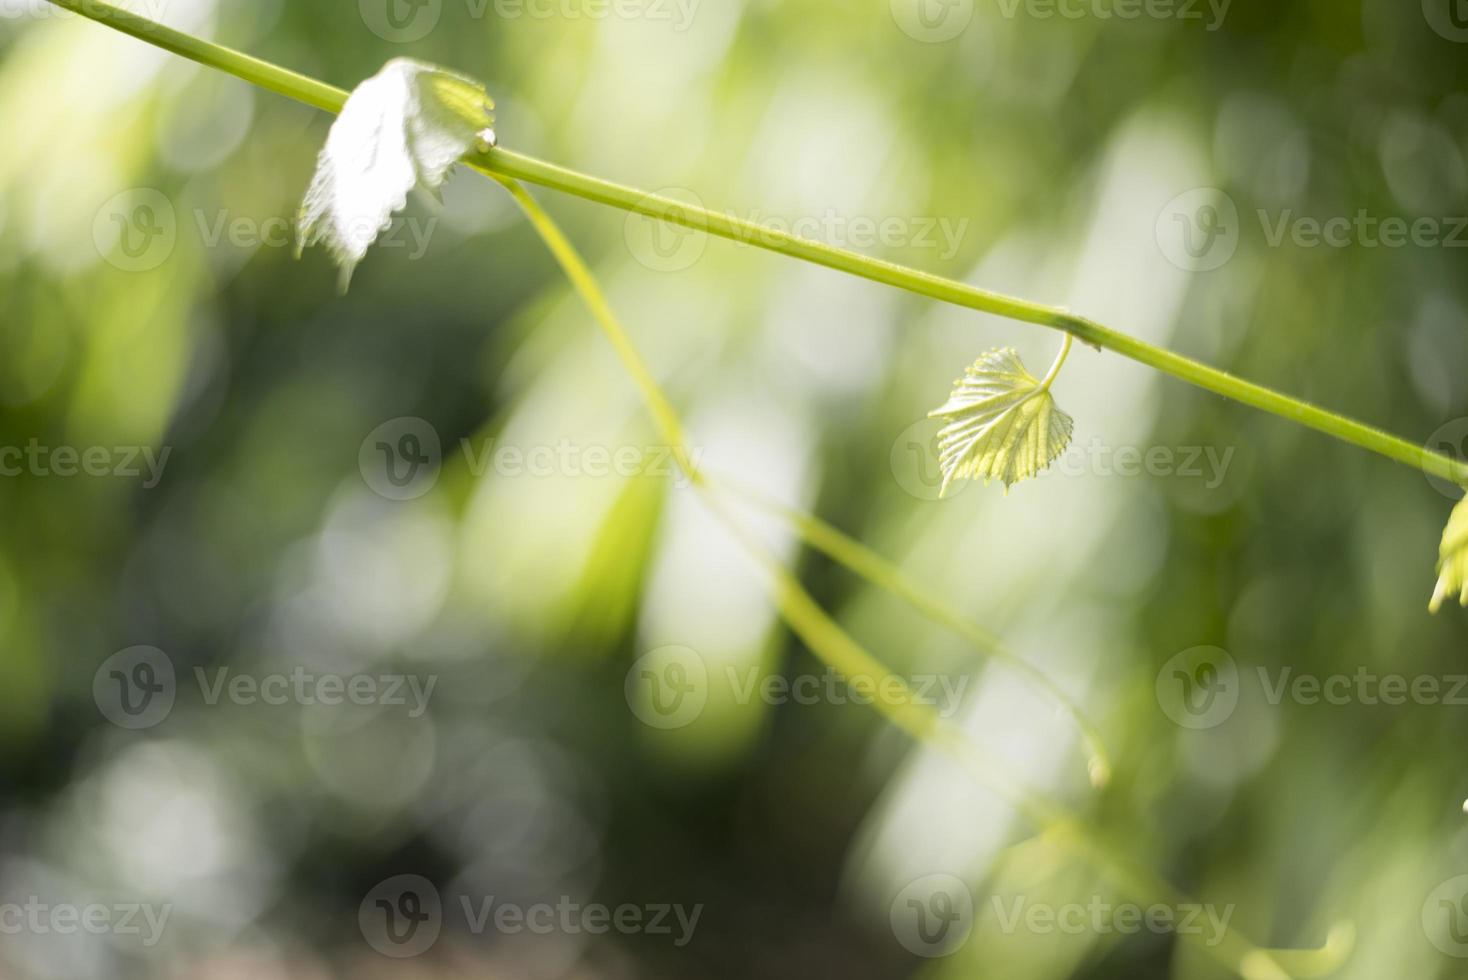 folha de uva verde na natureza com bokeh e luz natural de fundo foto